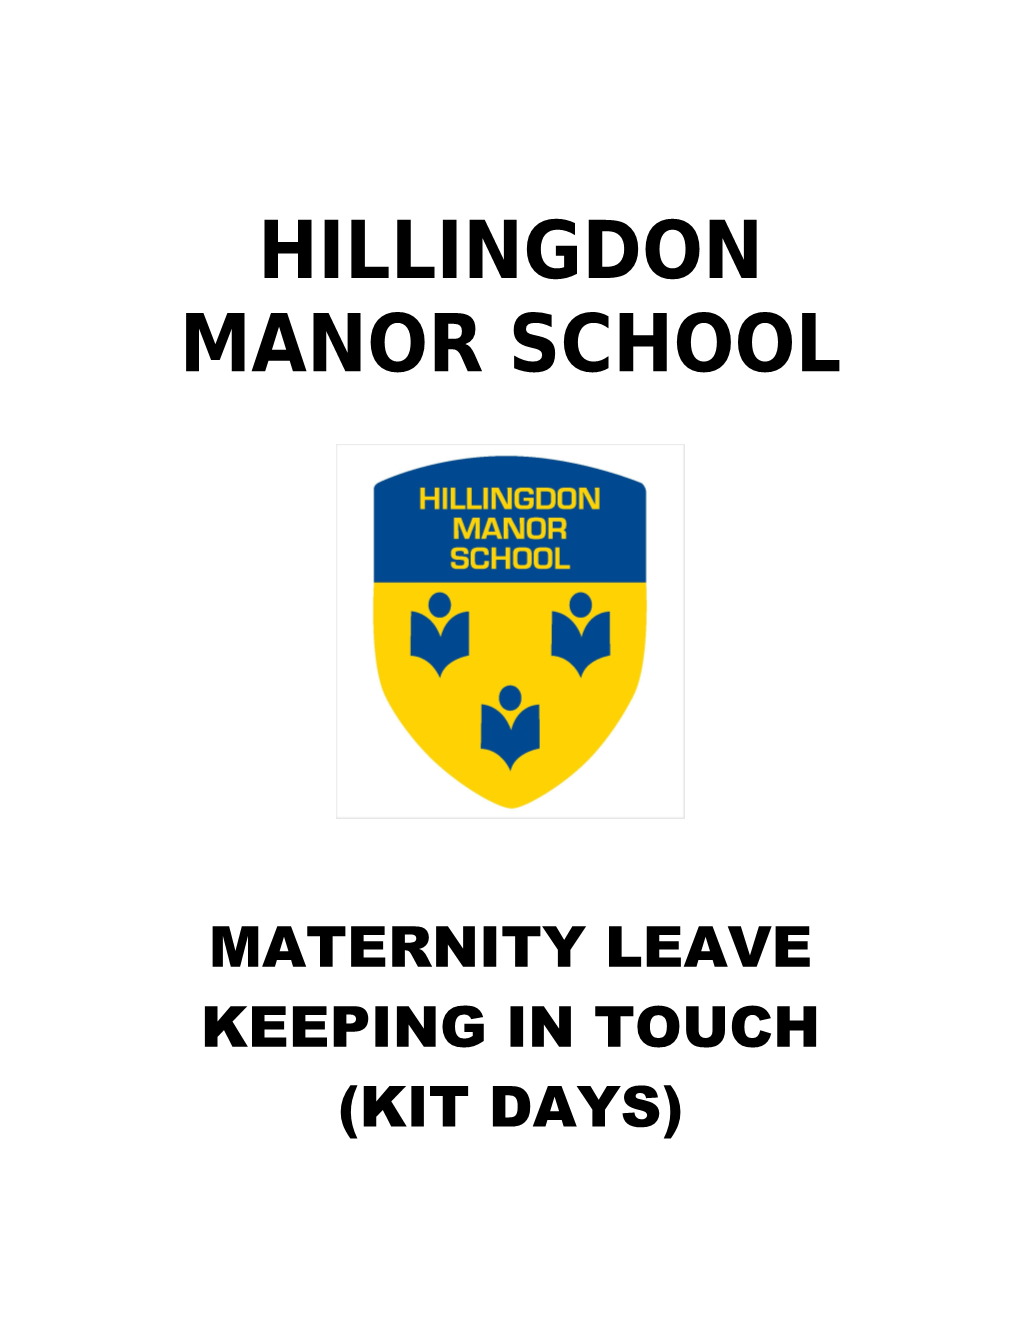 Hillingdon Manor School